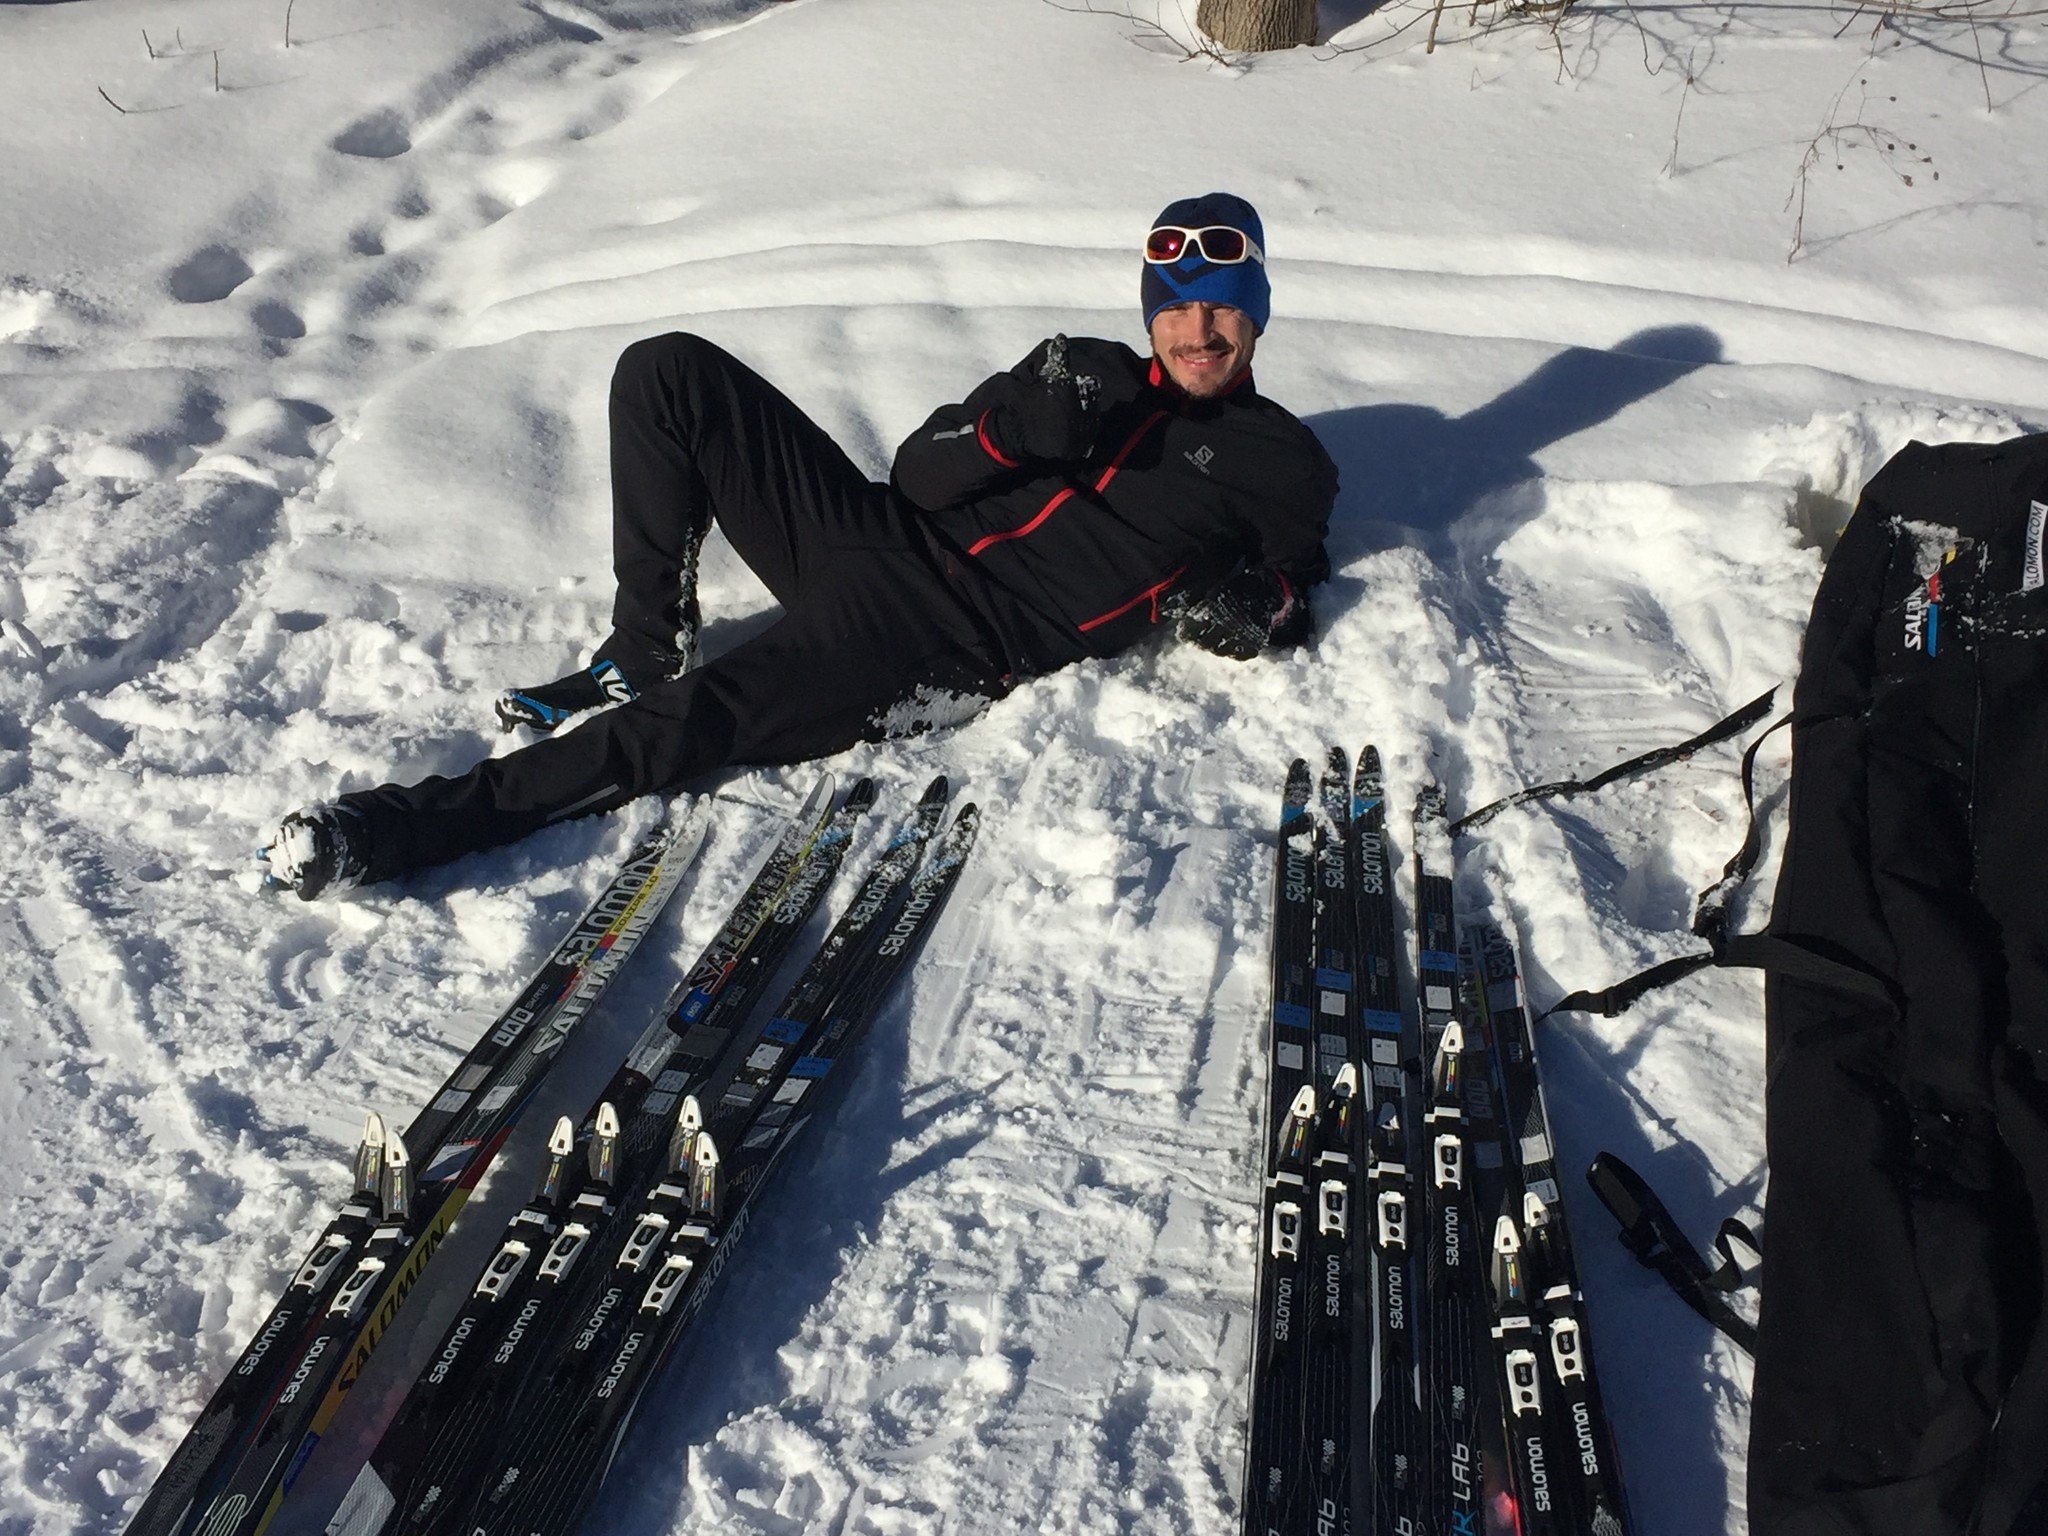 salomon snow skis